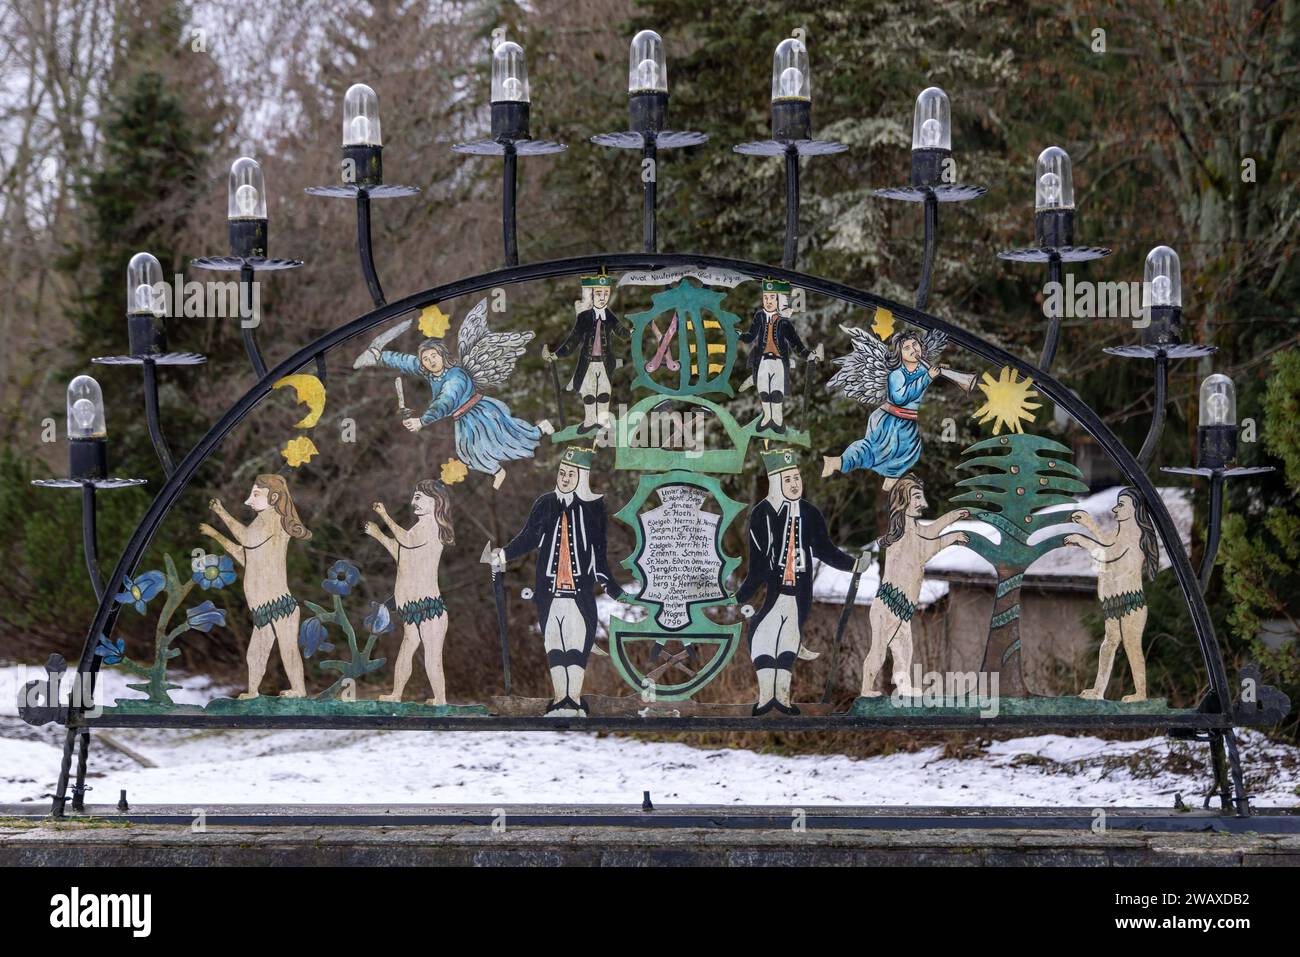 Ein Schwibbogen aus Metall steht vor dem Pferdegöbel in Johanngeorgenstadt. Der Pferdegöbel ist ein Denkmal der erzgebirgischen Bergbaugeschichte. Der Ort trägt aus touristischen Gesichtspunkten die Bezeichnung Stadt des Schwibbogens . Der älteste bekannte Schwibbogen entstand im Jahr 1740 in Johanngeorgenstadt und besteht aus Metall. Johanngeorgenstadt ist eine Bergstadt im sächsischen Erzgebirgskreis unmittelbar an der Grenze zu Tschechien. Die Stadt entstand 1654 als Exulantensiedlung böhmischer Protestanten und hat eine lange Bergbautradition, die mit dem Abbau von Eisen und Zinn begann. N Stock Photo